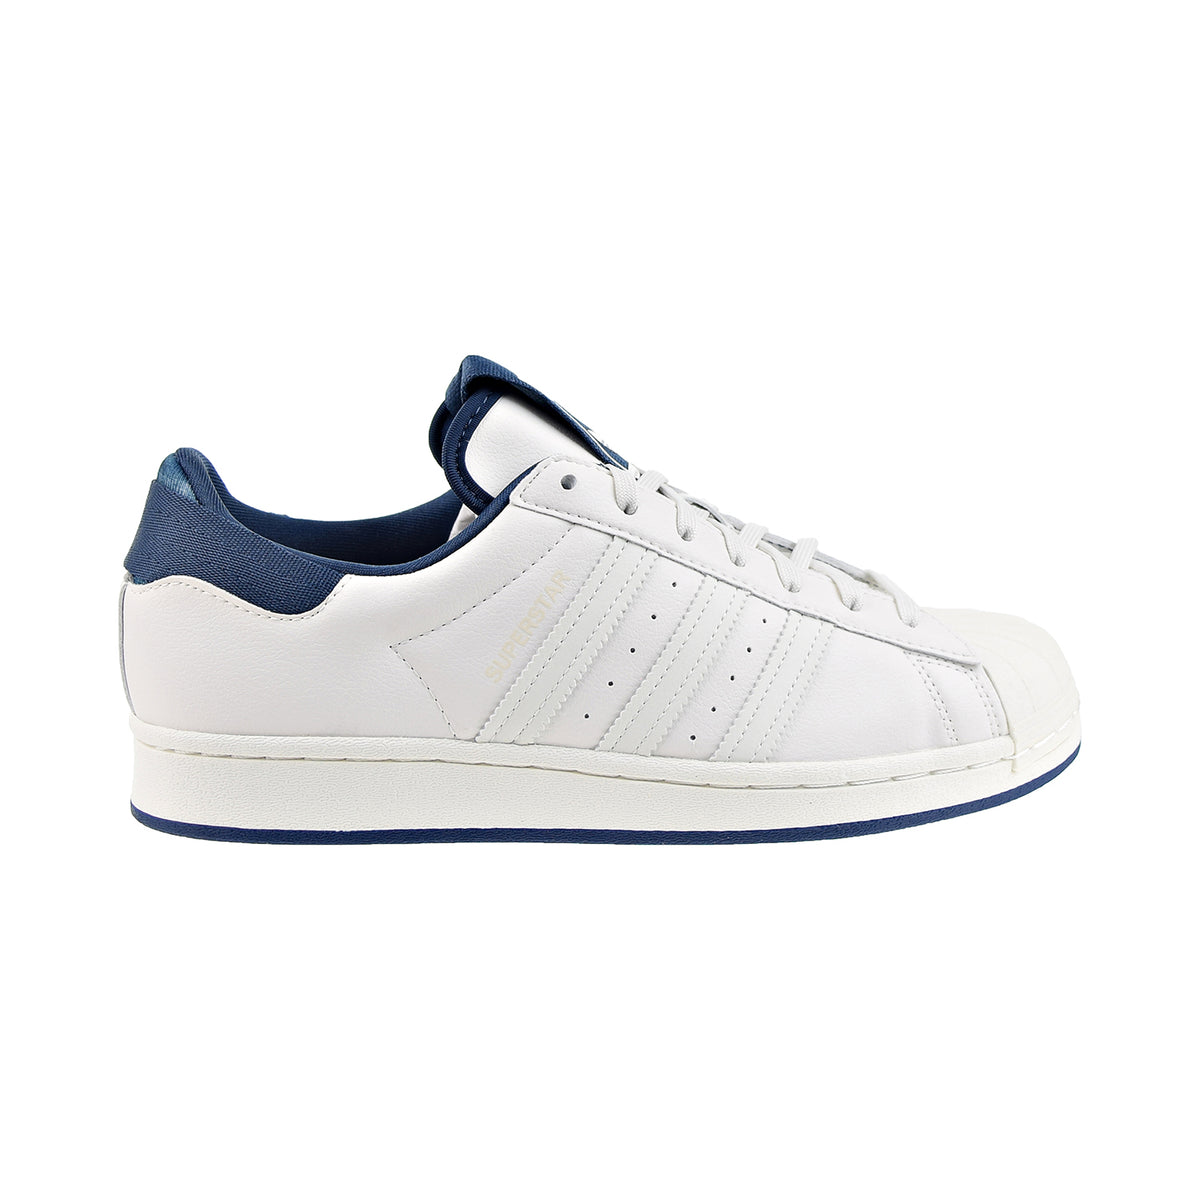 Neem de telefoon op gewelddadig Categorie Adidas Superstar Men's Shoes Chalk White/White Tint/Crew Navy